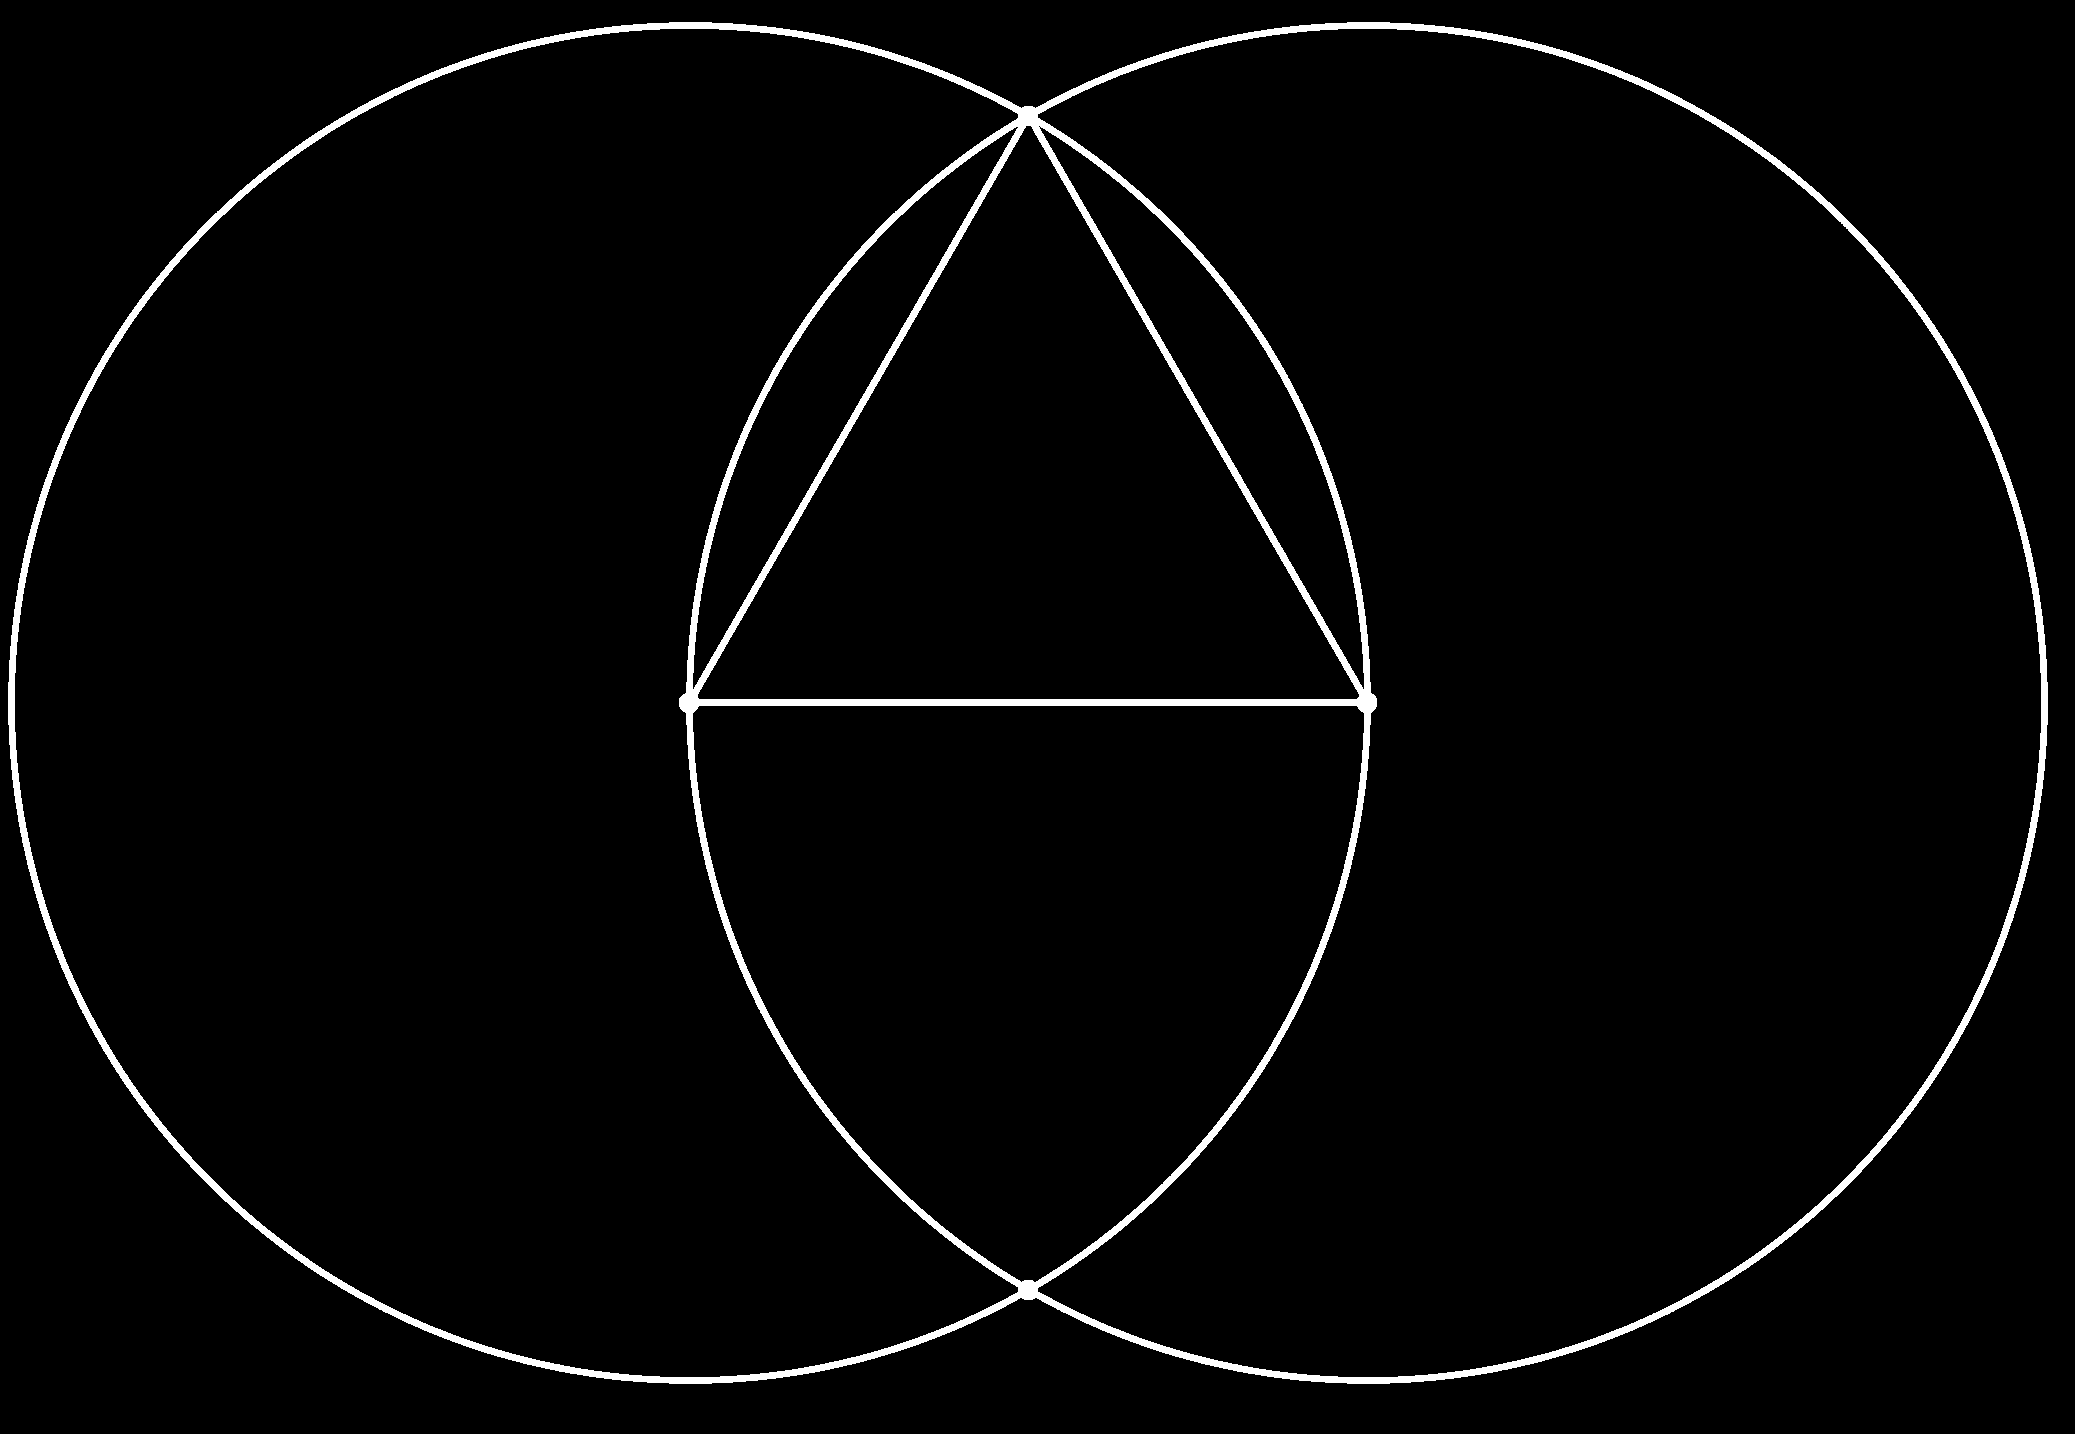 Geometria Euclidiana Plana AULA 1 Figura 1.1: Um triângulo equilátero. Existe uma falha nesta demonstração.